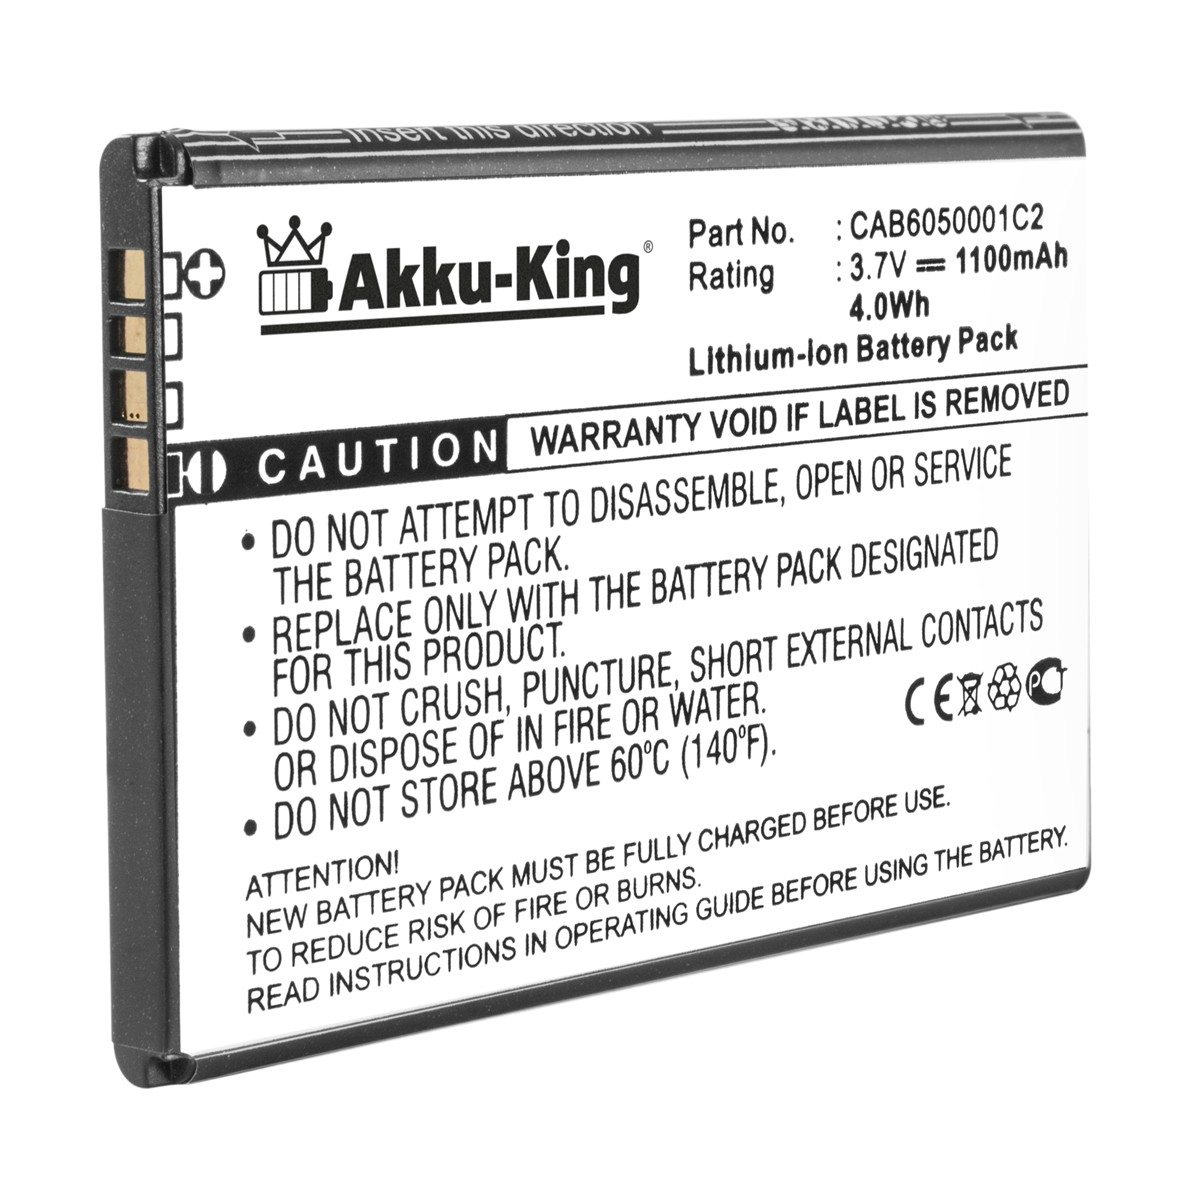 Li-Ion Alcatel 1100mAh 3.7 Akku CAB6050001C2 für Handy-Akku, AKKU-KING Volt,